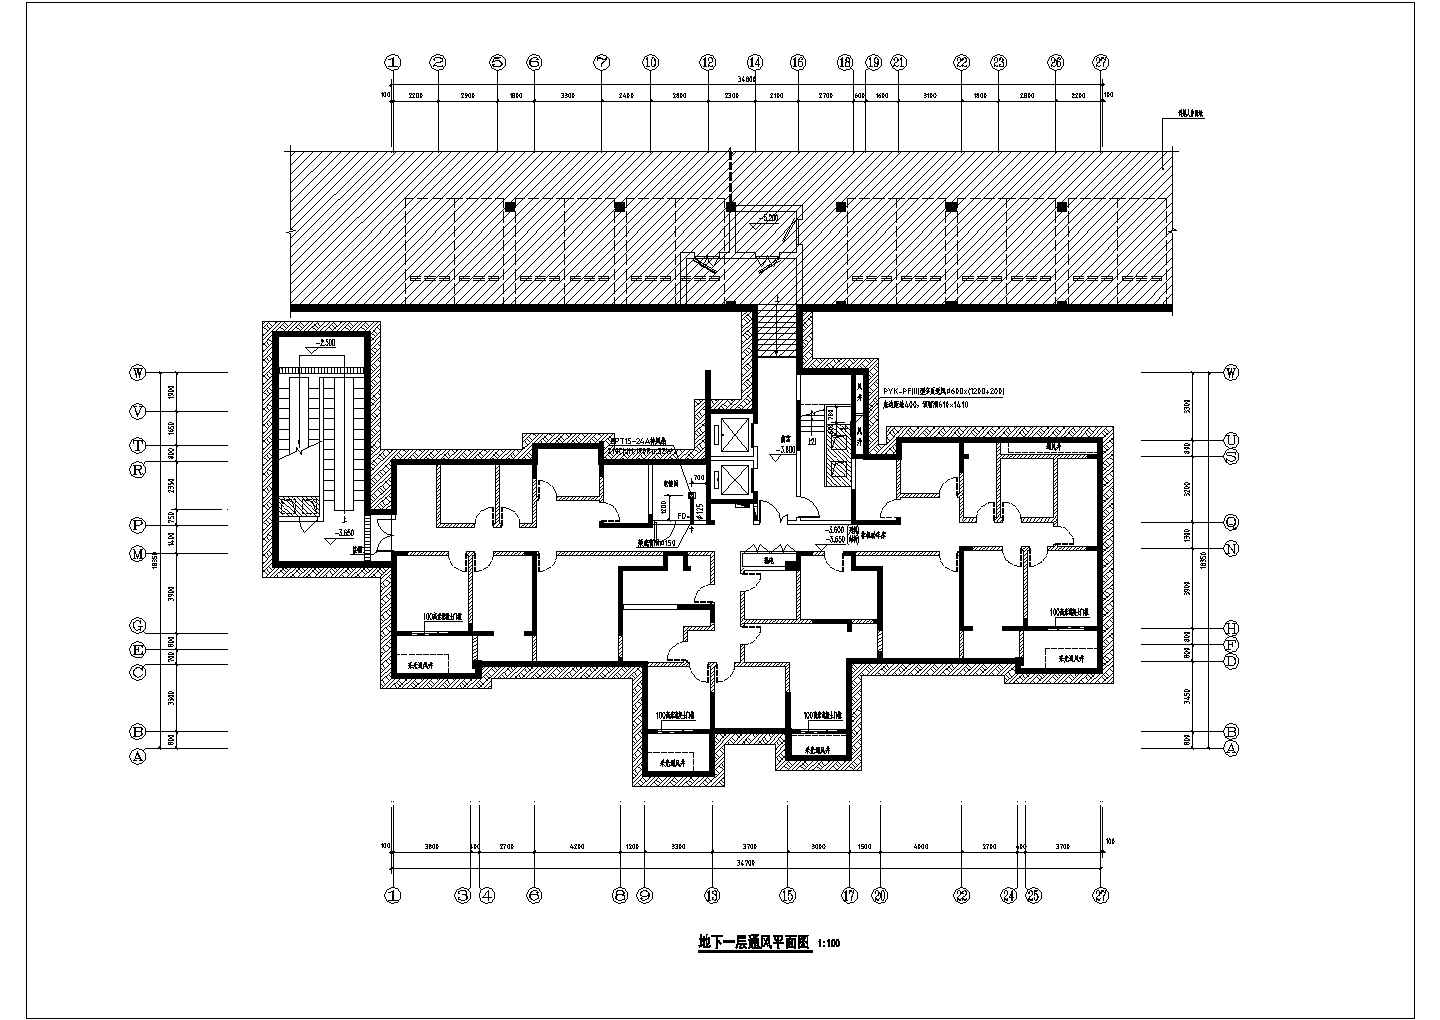 张家港某小区25层住宅楼的通风系统及消防通风系统设计CAD图纸